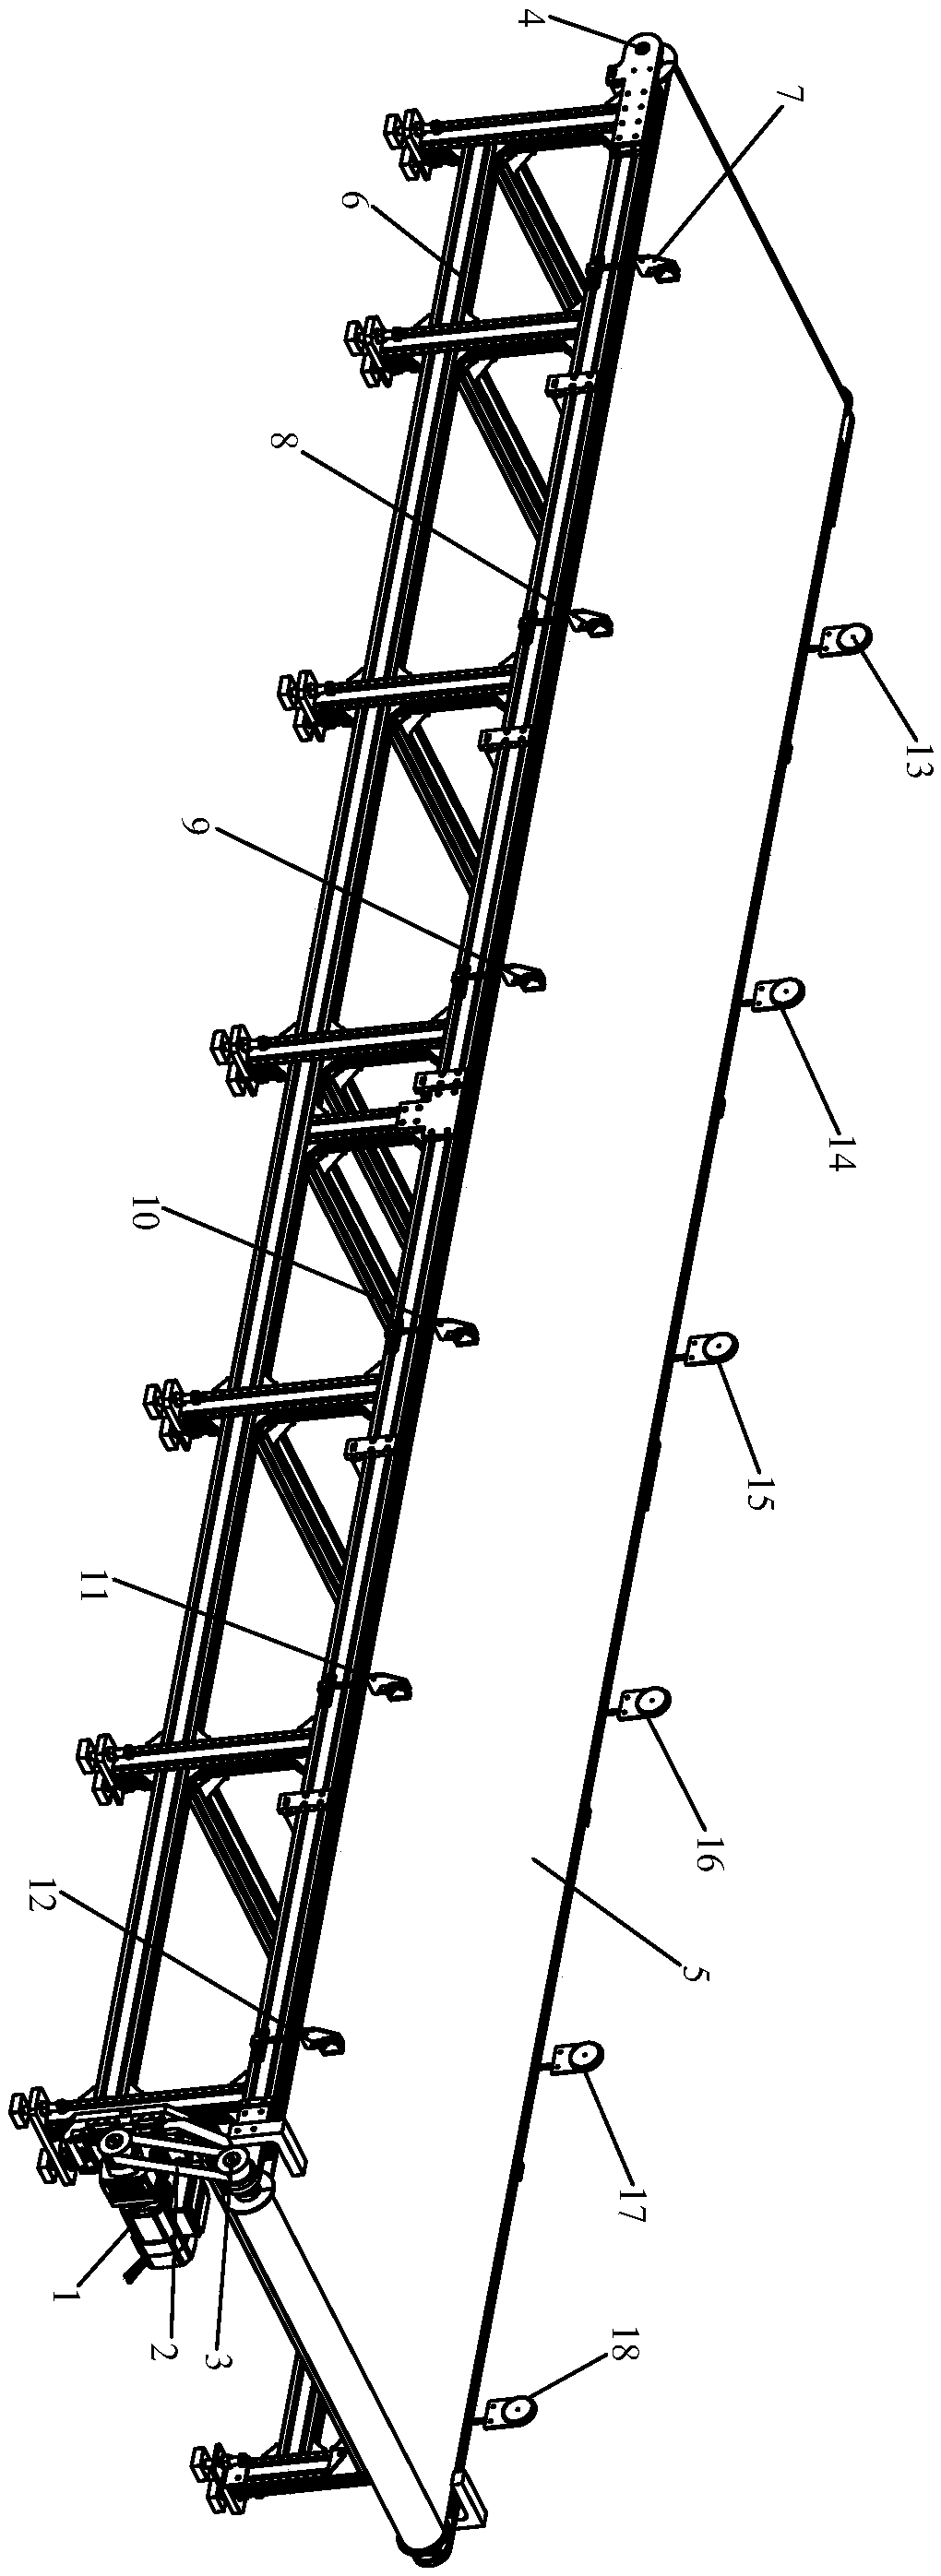 Belt conveyor suitable for automobile welding production line